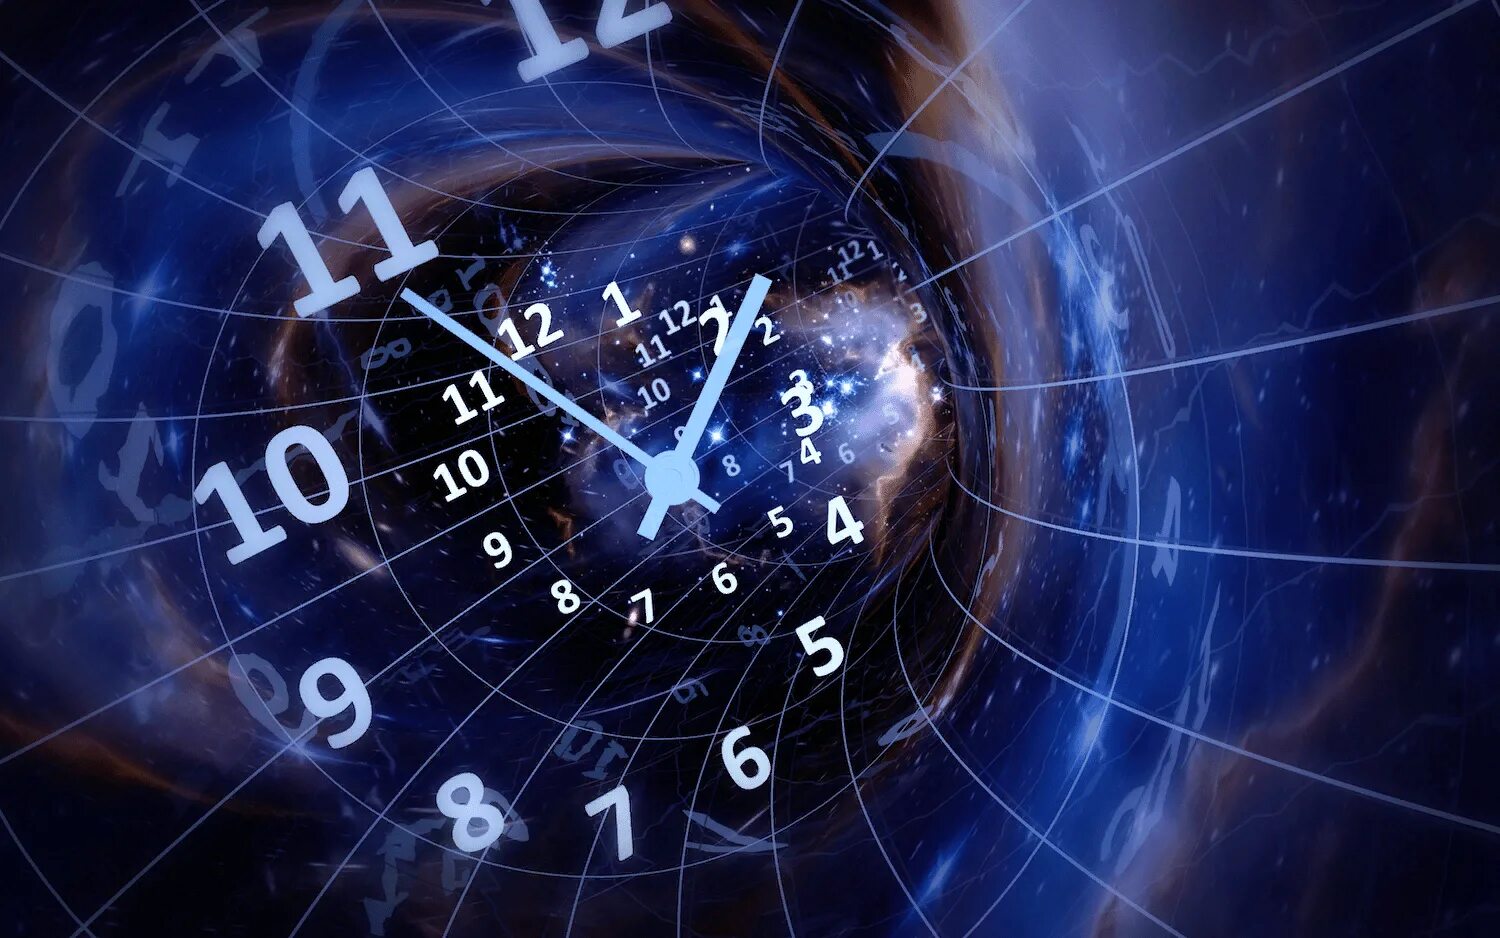 Во время. Путешествие во времени. Перемещение во времени и пространстве. В течении времени. Часы "путешествие во времени".